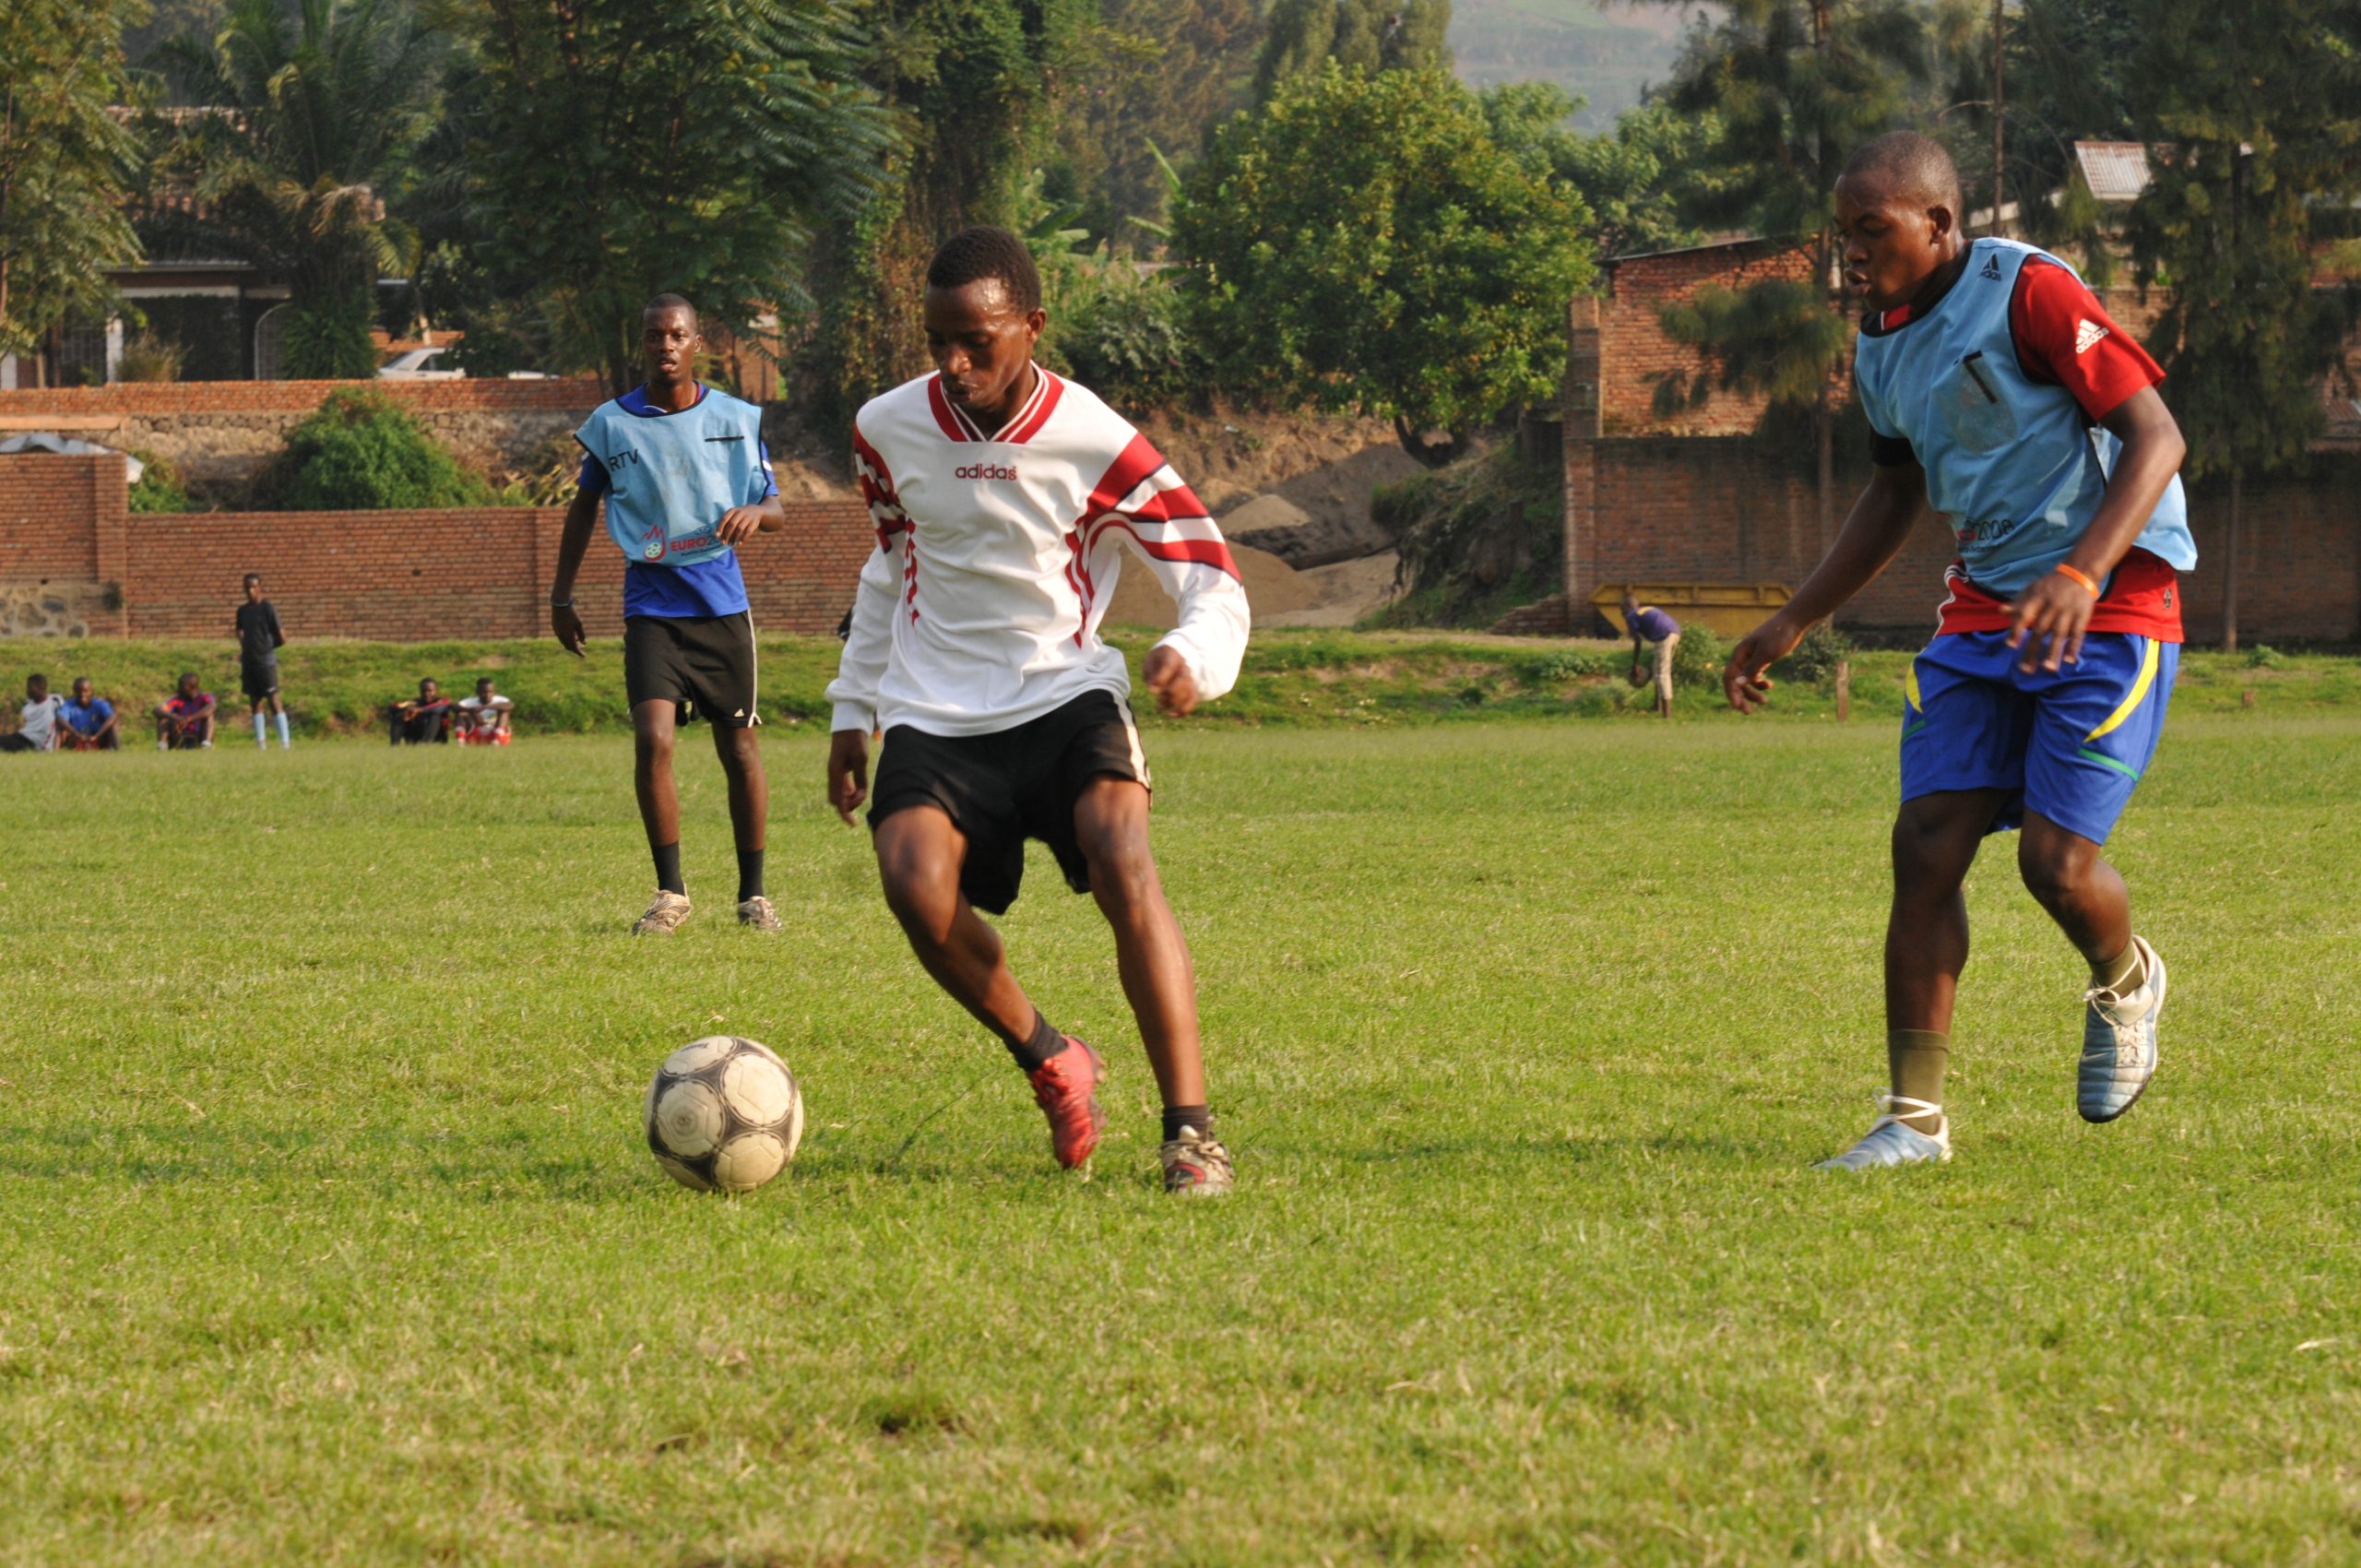 Teamgeist wird im Projekt Vision Jeunesse Nouvelle in Ruanda groß geschrieben! Das ist ein wichtiger Faktor, um den eigenen Platz in der Gesellschaft zu finden. Die Jugendlichen üben genau das.